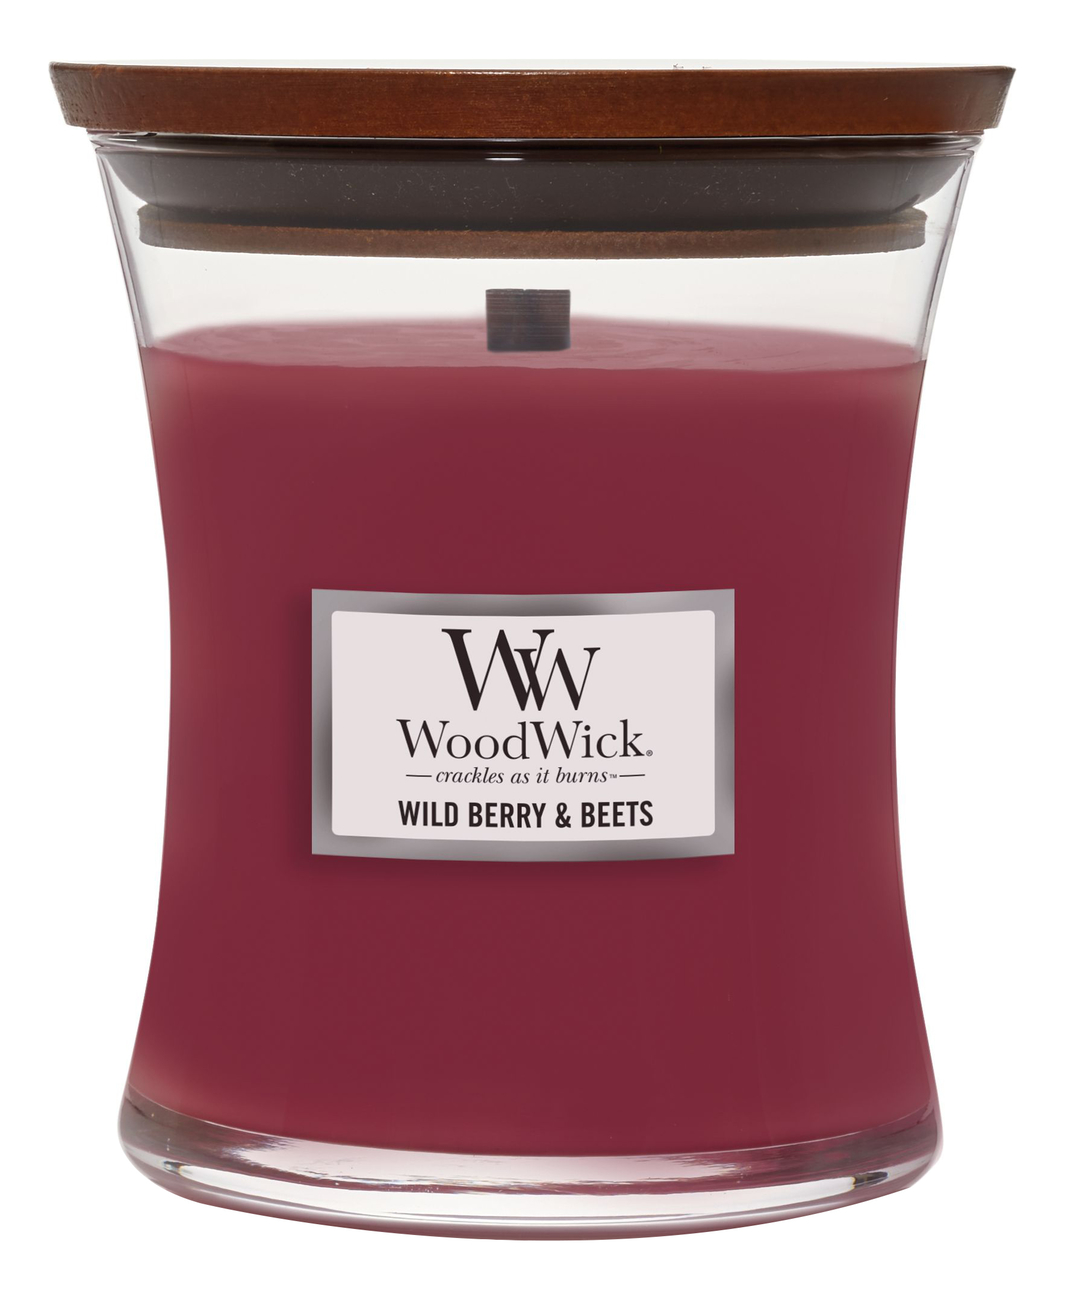 Купить Ароматическая свеча Wild Berry & Beets: свеча 275г, Ароматическая свеча Wild Berry & Beets, WoodWick